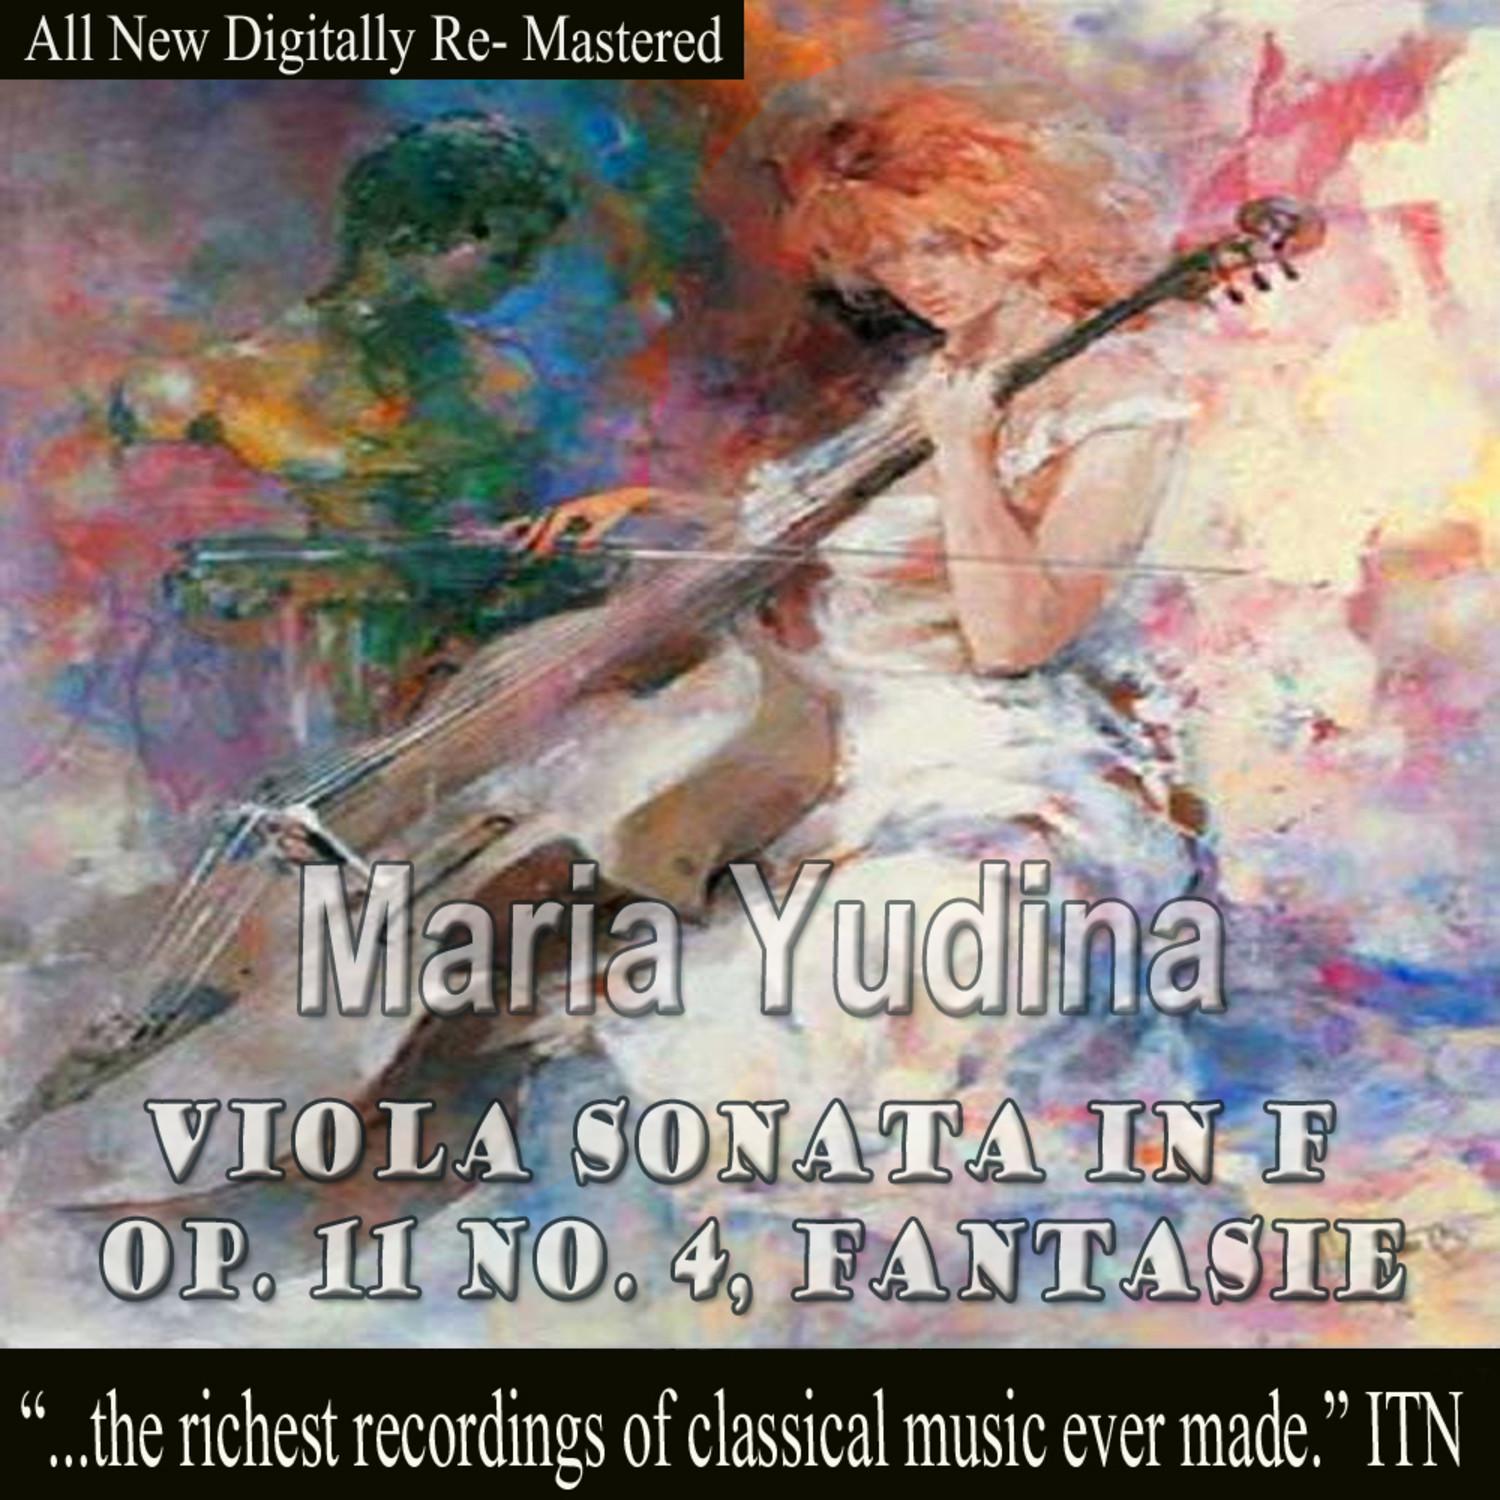 Viola Sonata in F Op. 11 No. 4, Fantasie